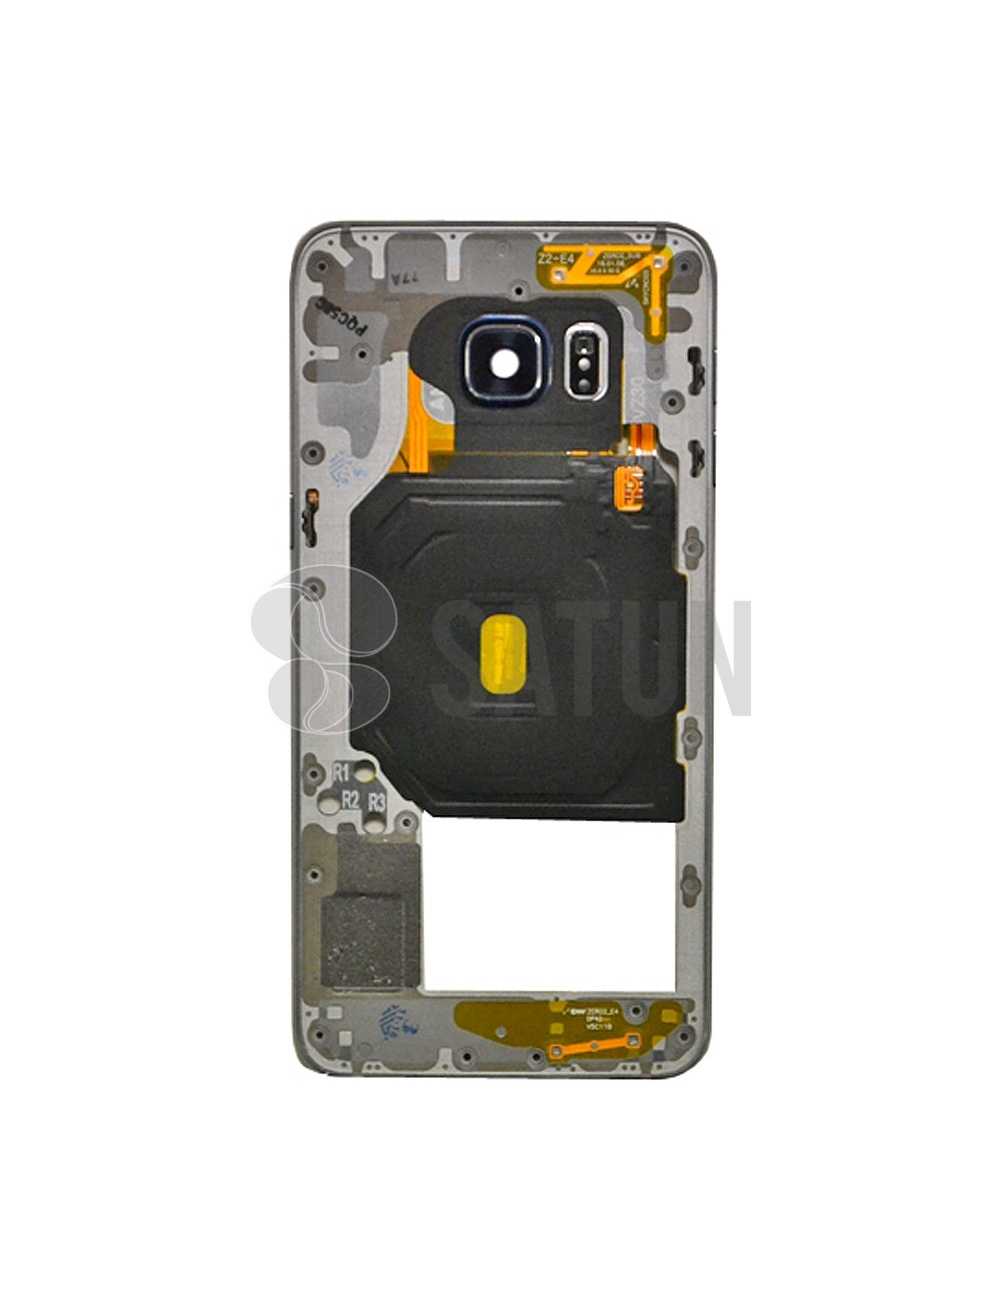 Carcasa intermedia Samsung Galaxy S6 Edge Plus oro (original con uso)